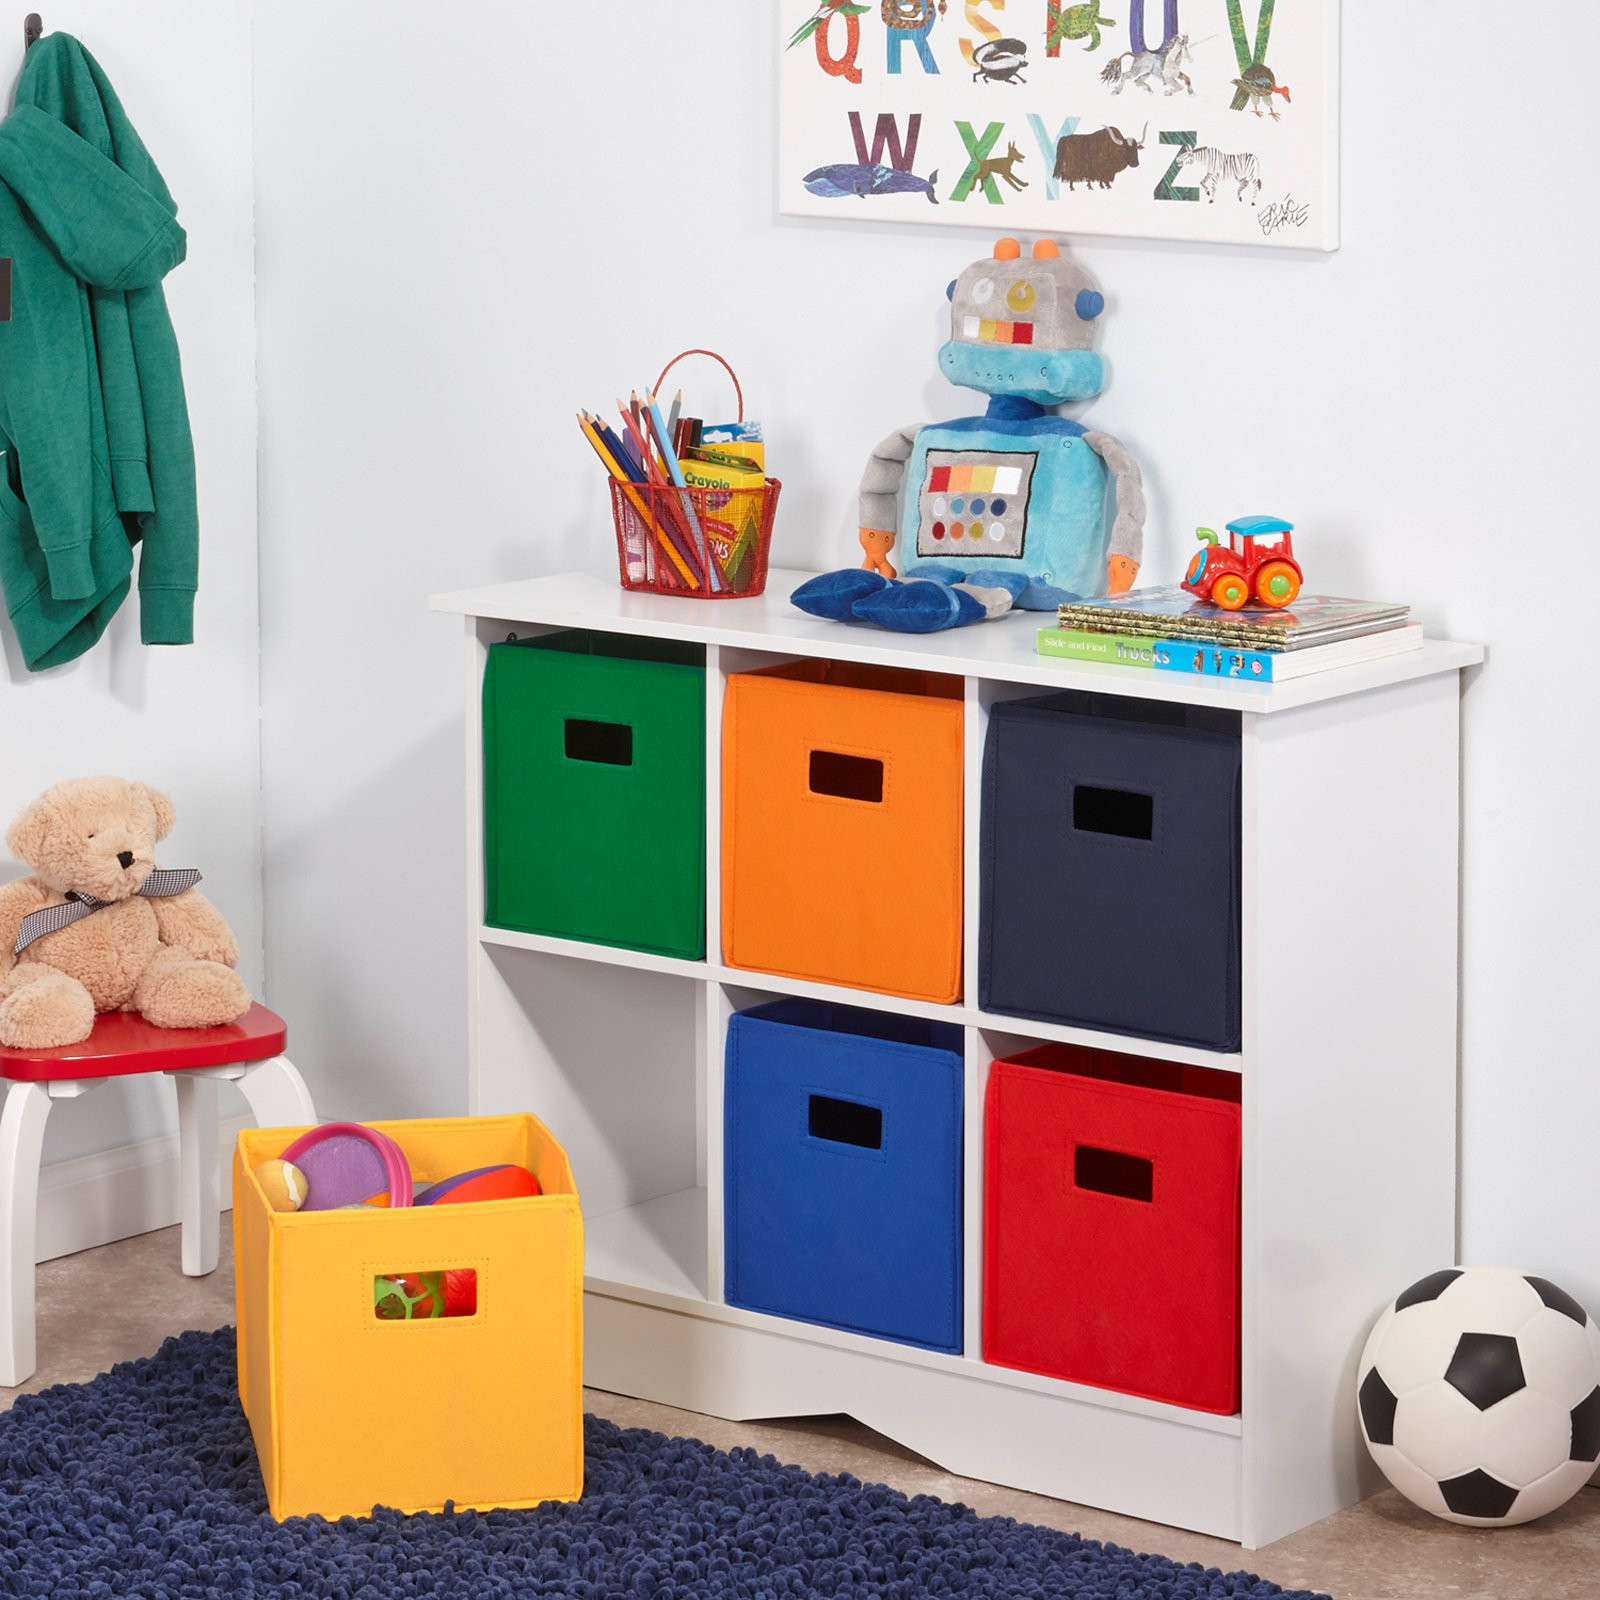 Kids Storage Bins
 RiverRidge Kids White Cabinet with 6 Bins Toy Storage at